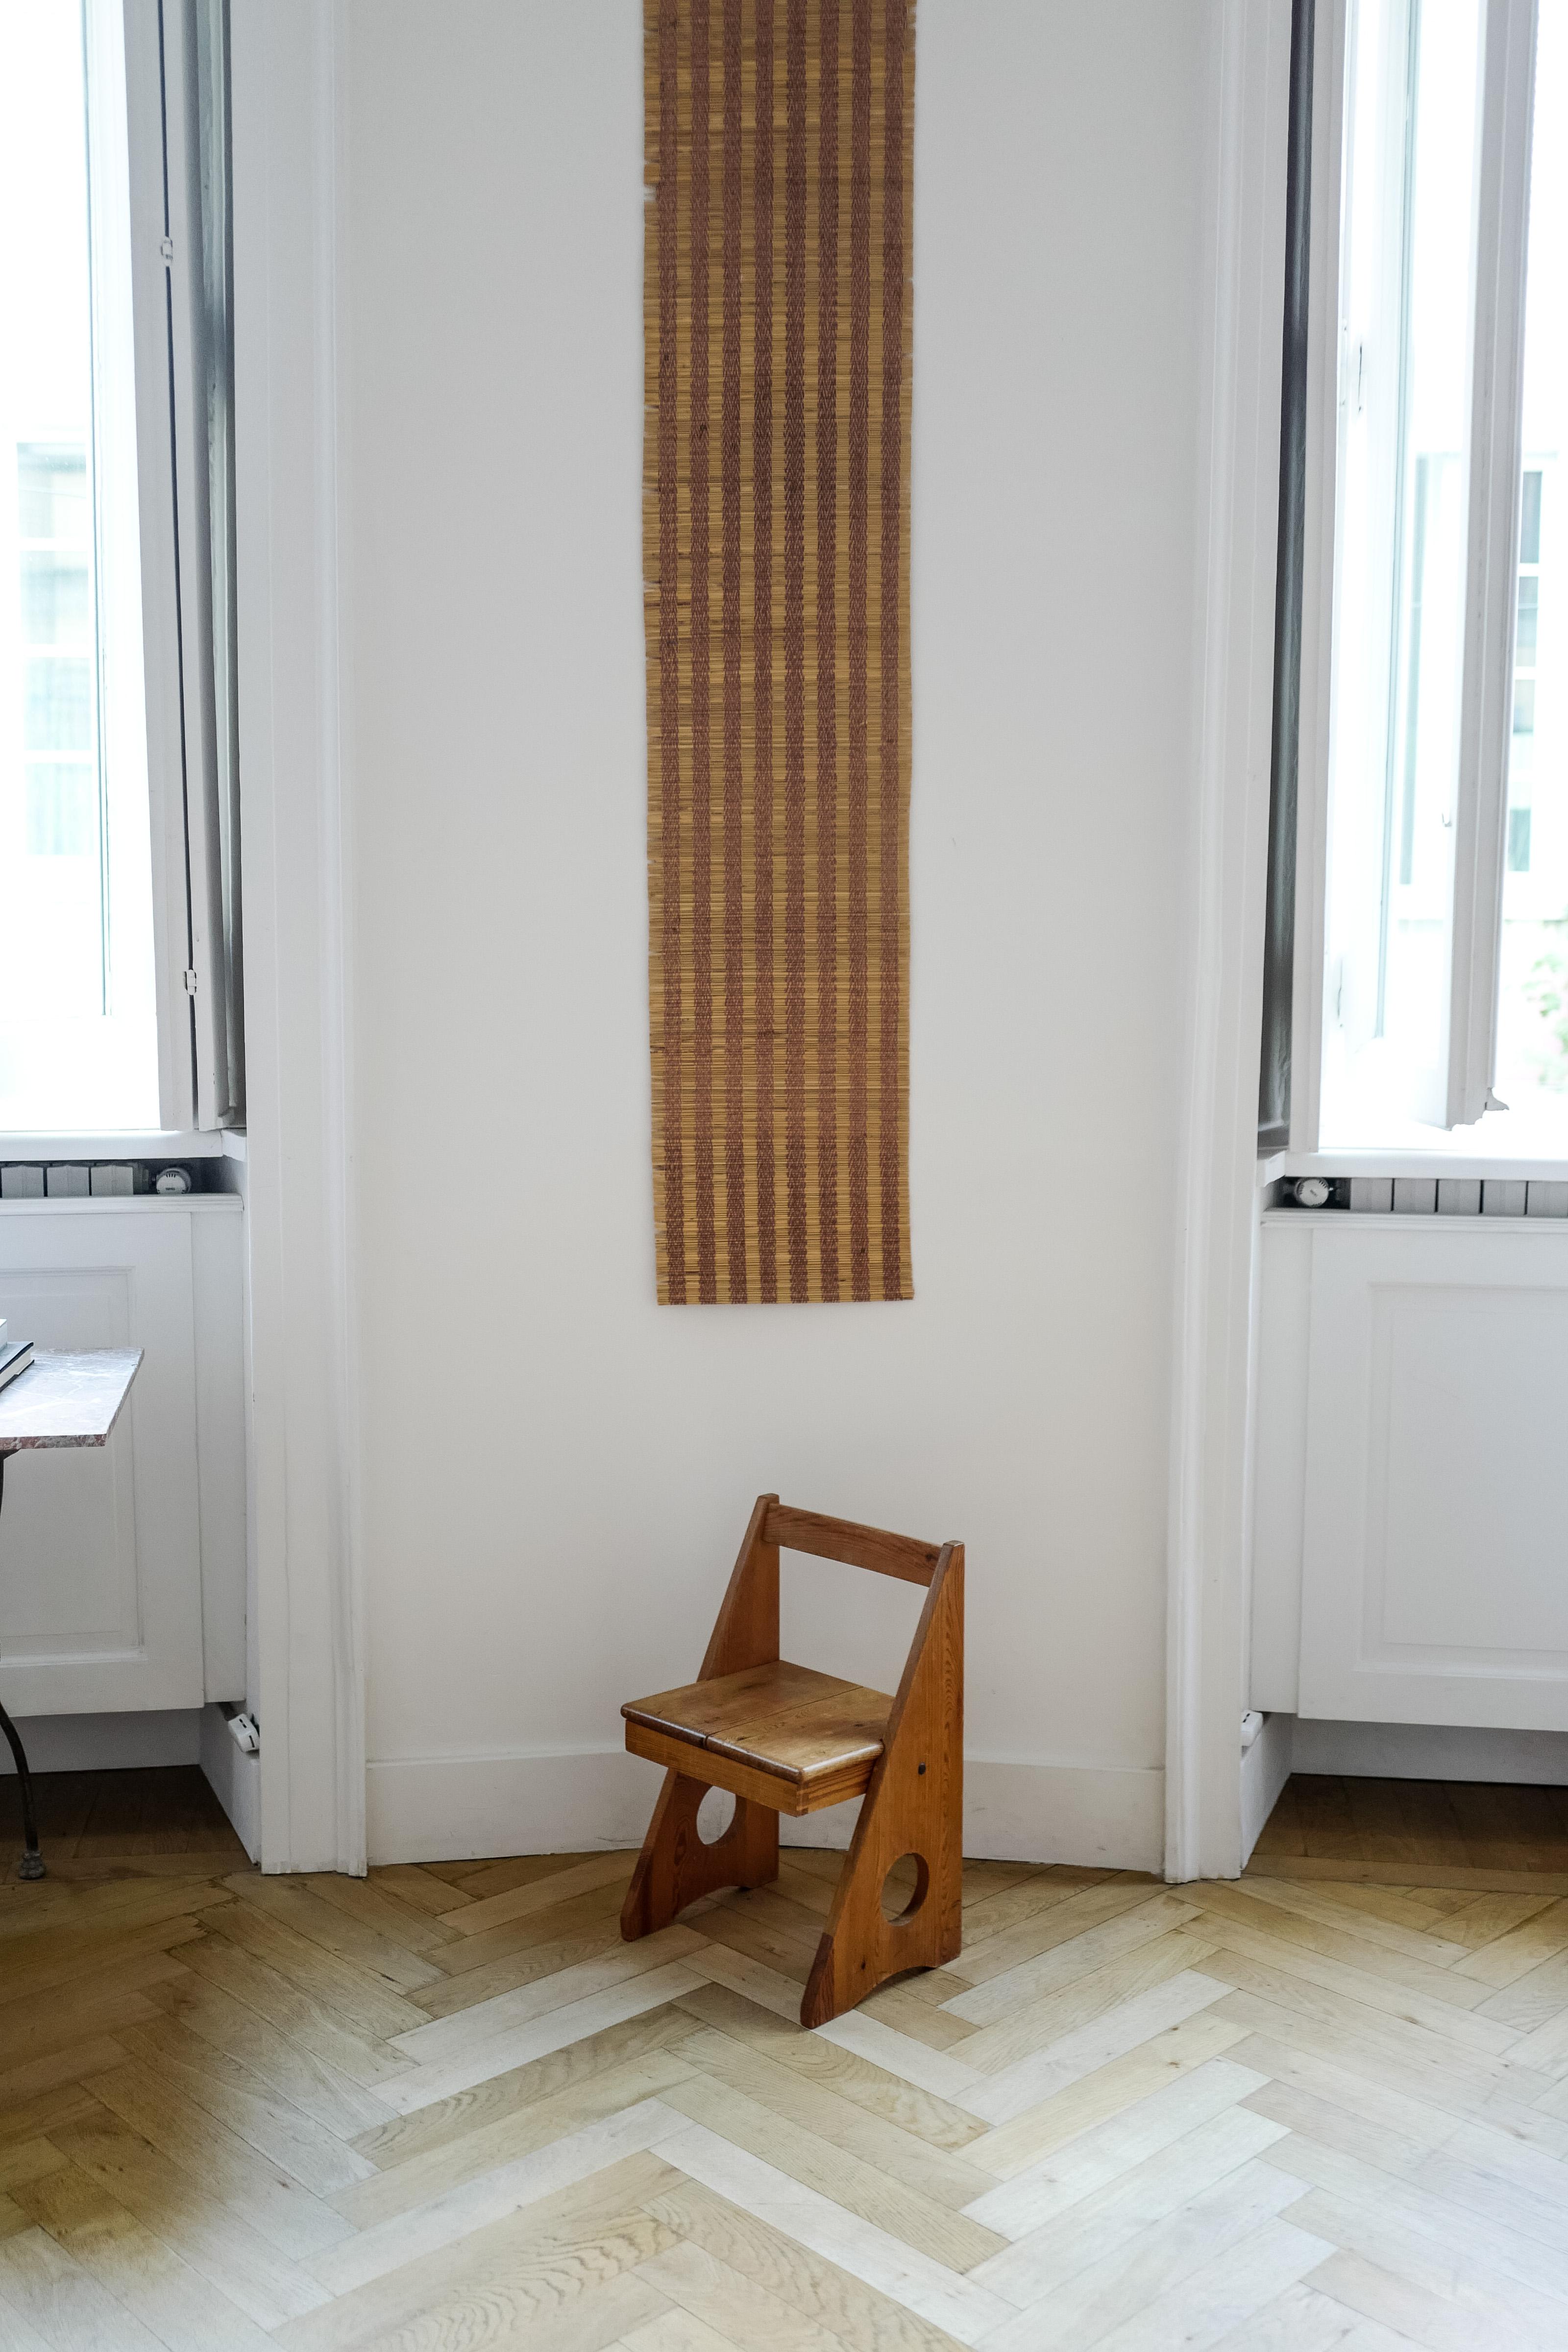 gilbert marklund chair